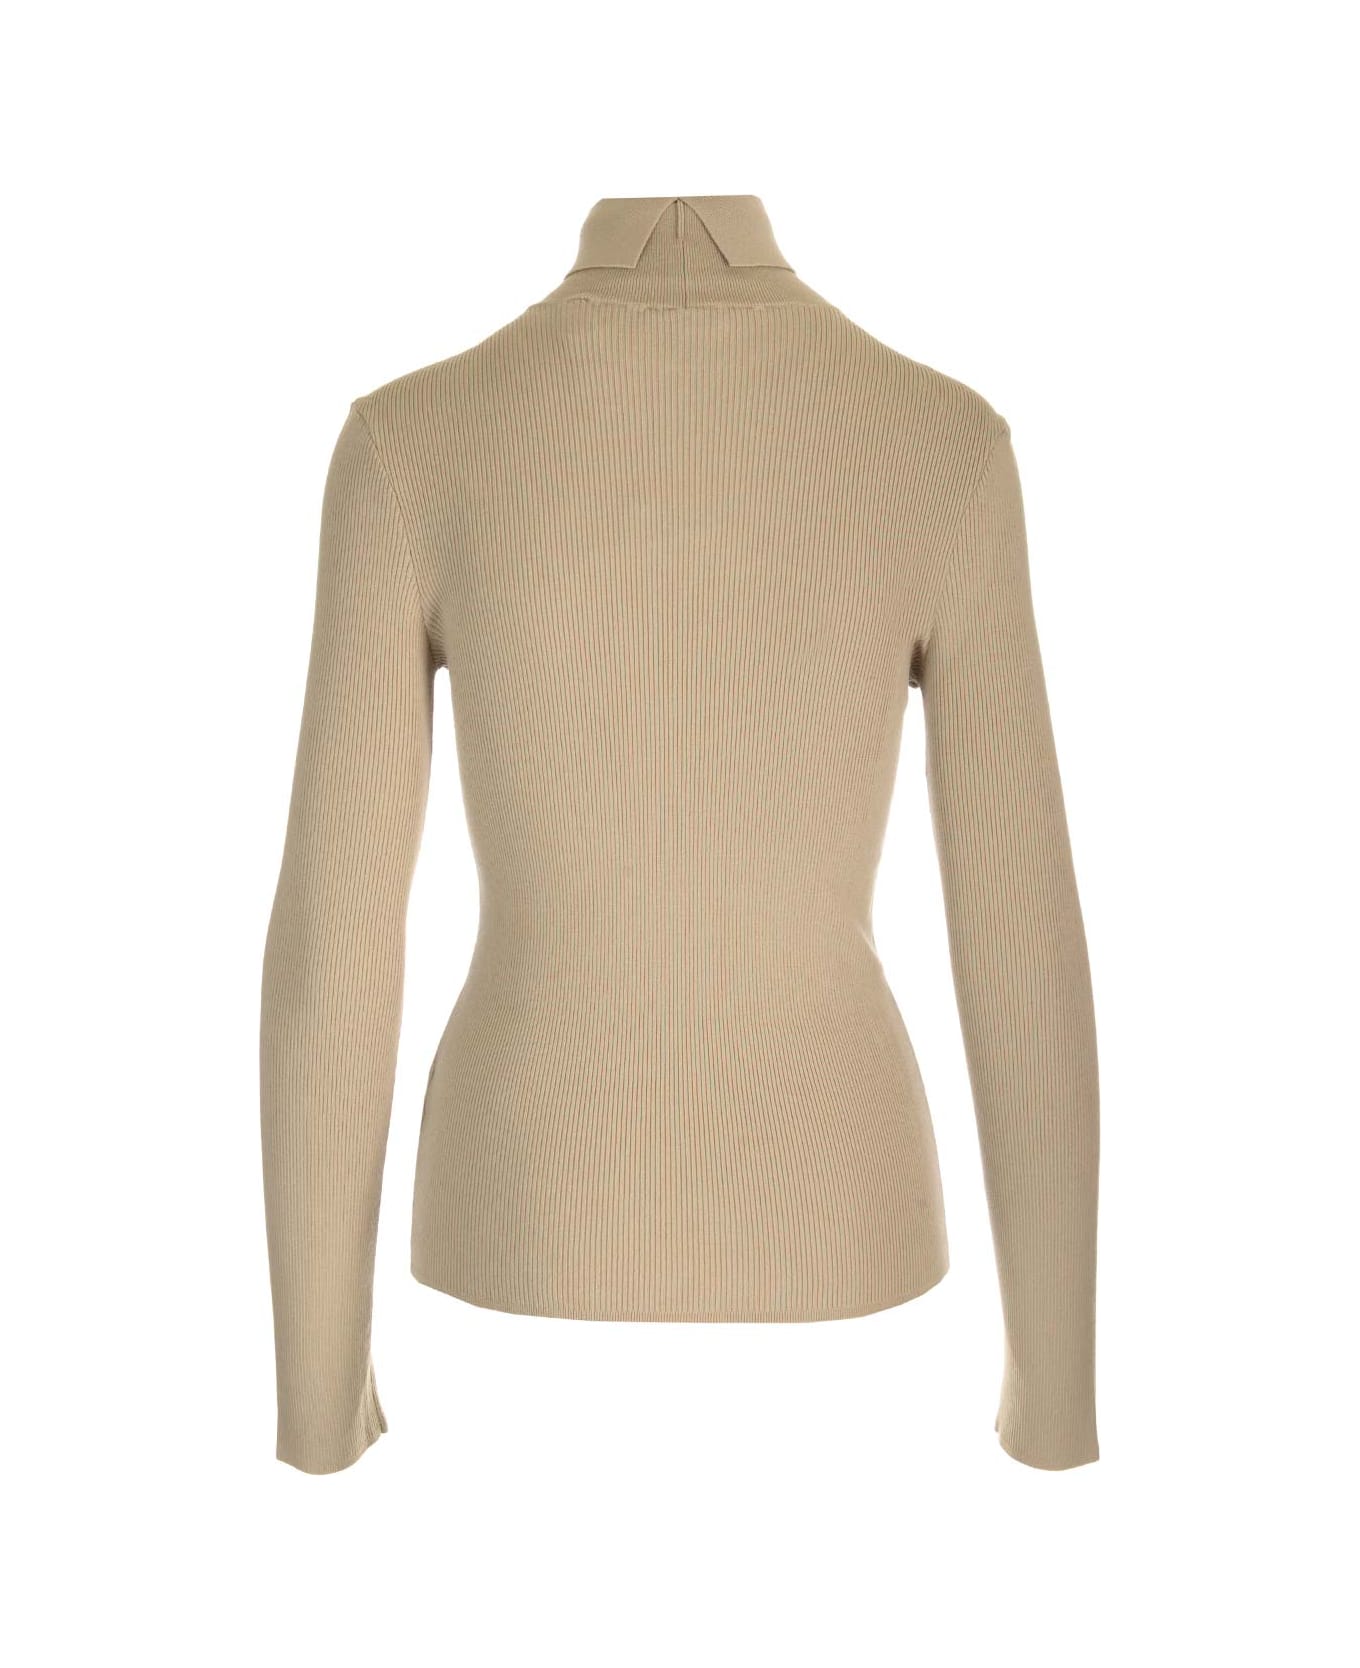 Burberry Turtleneck Sweater - Beige